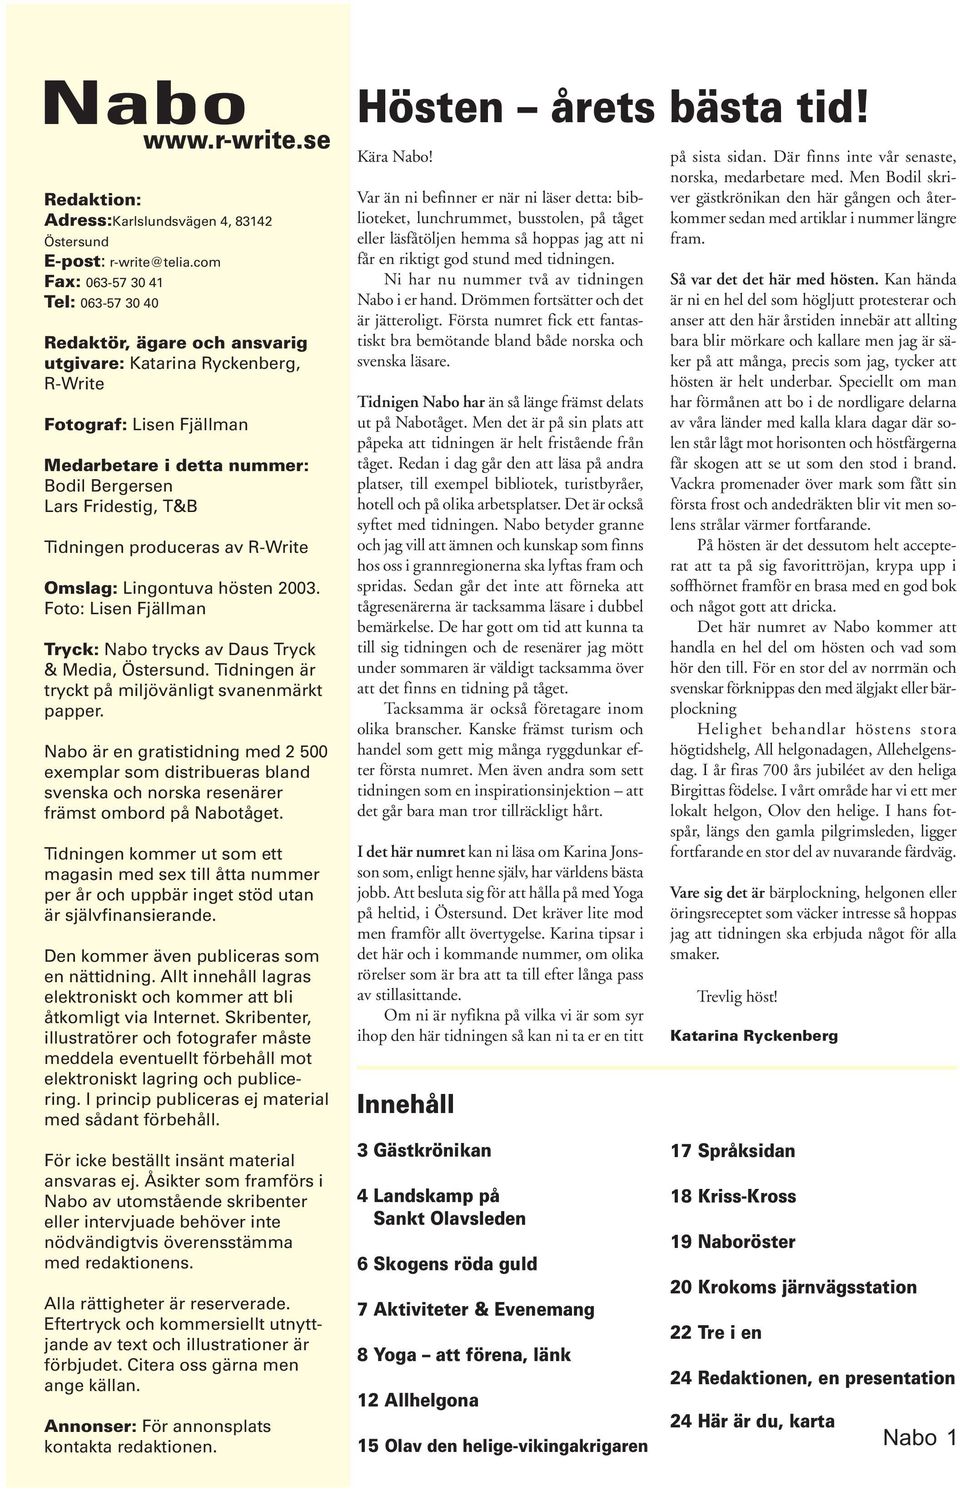 Tidningen produceras av R-Write Omslag: Lingontuva hösten 2003. Foto: Lisen Fjällman Tryck: Nabo trycks av Daus Tryck & Media, Östersund. Tidningen är tryckt på miljövänligt svanenmärkt papper.